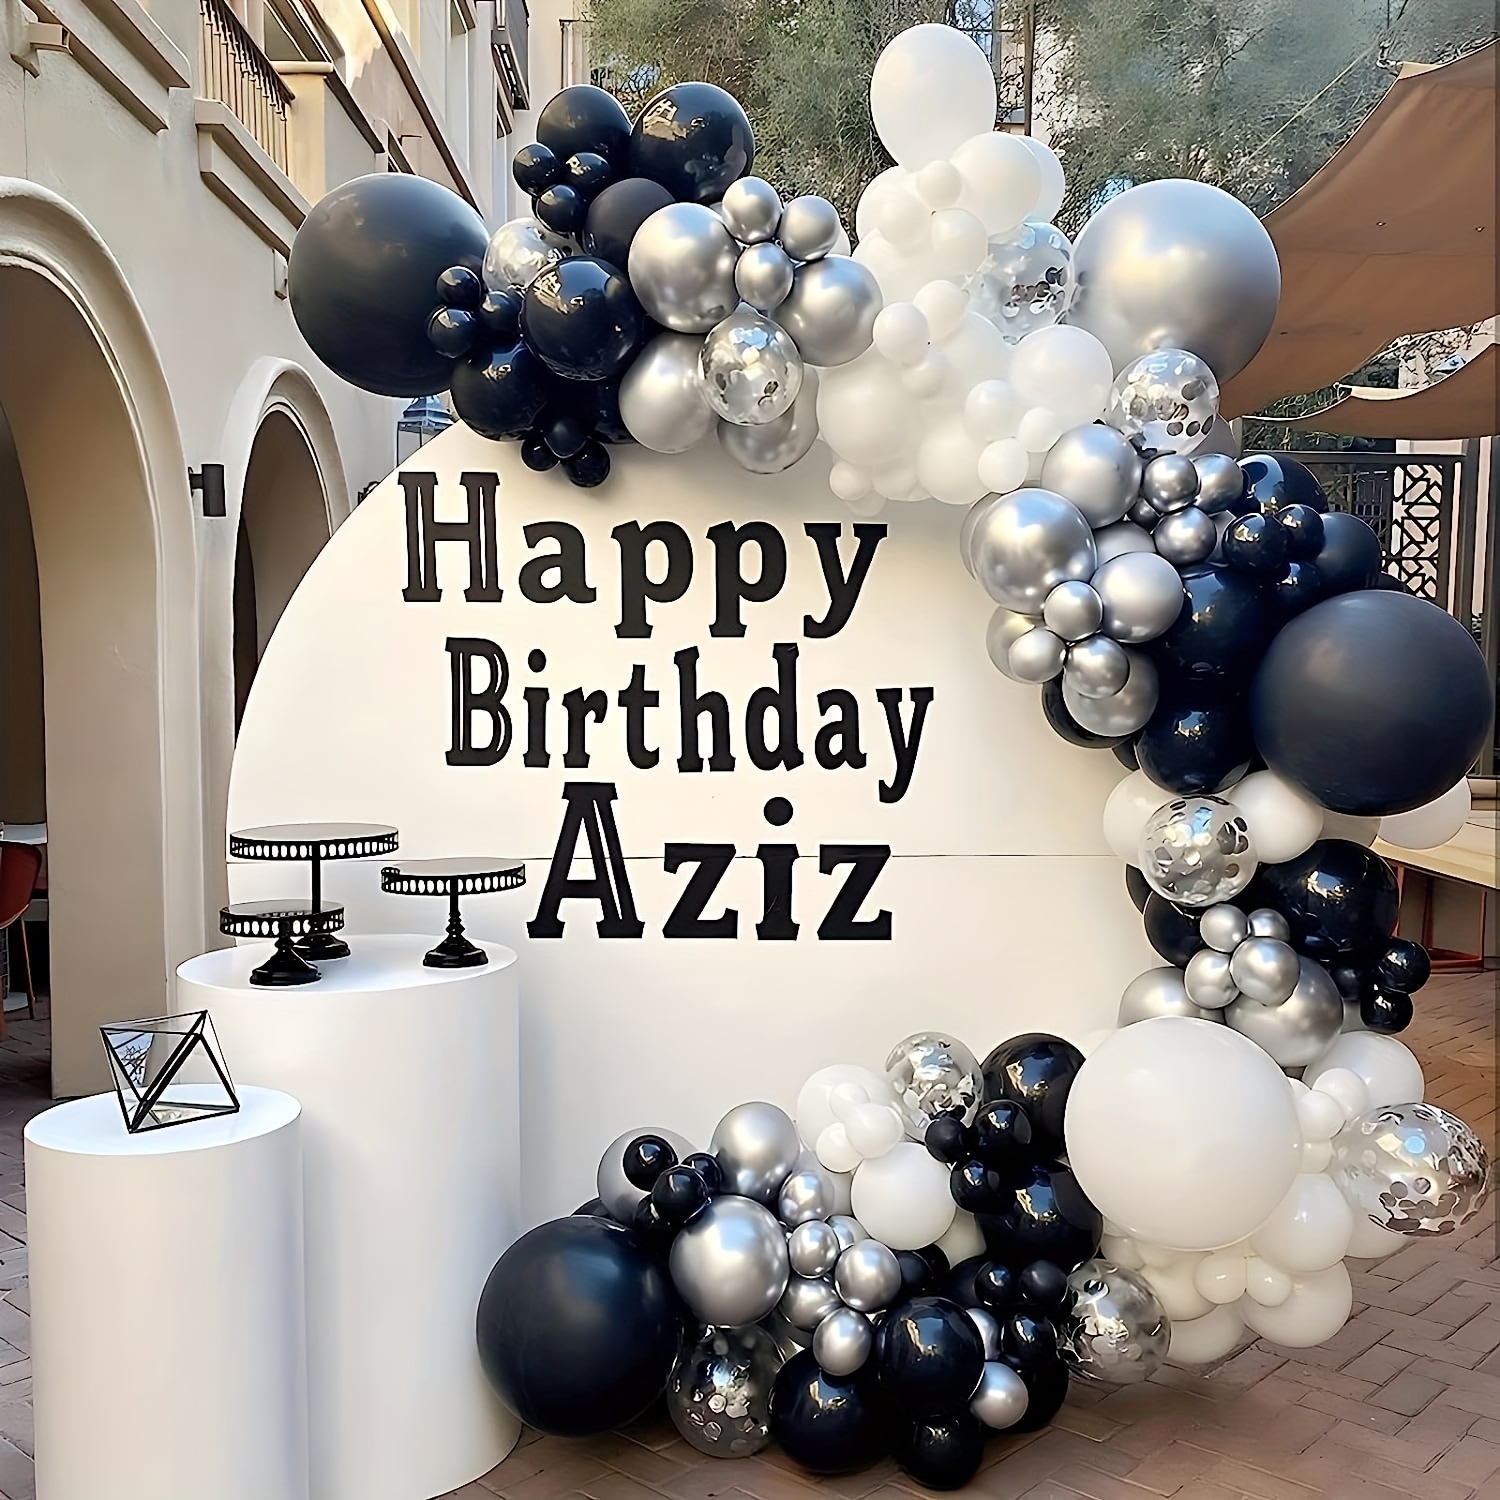 187 globos azules para fiesta de cumpleaños, suministros de fiesta temática  de feliz cumpleaños, globos de decoración que incluyen globos de estrella